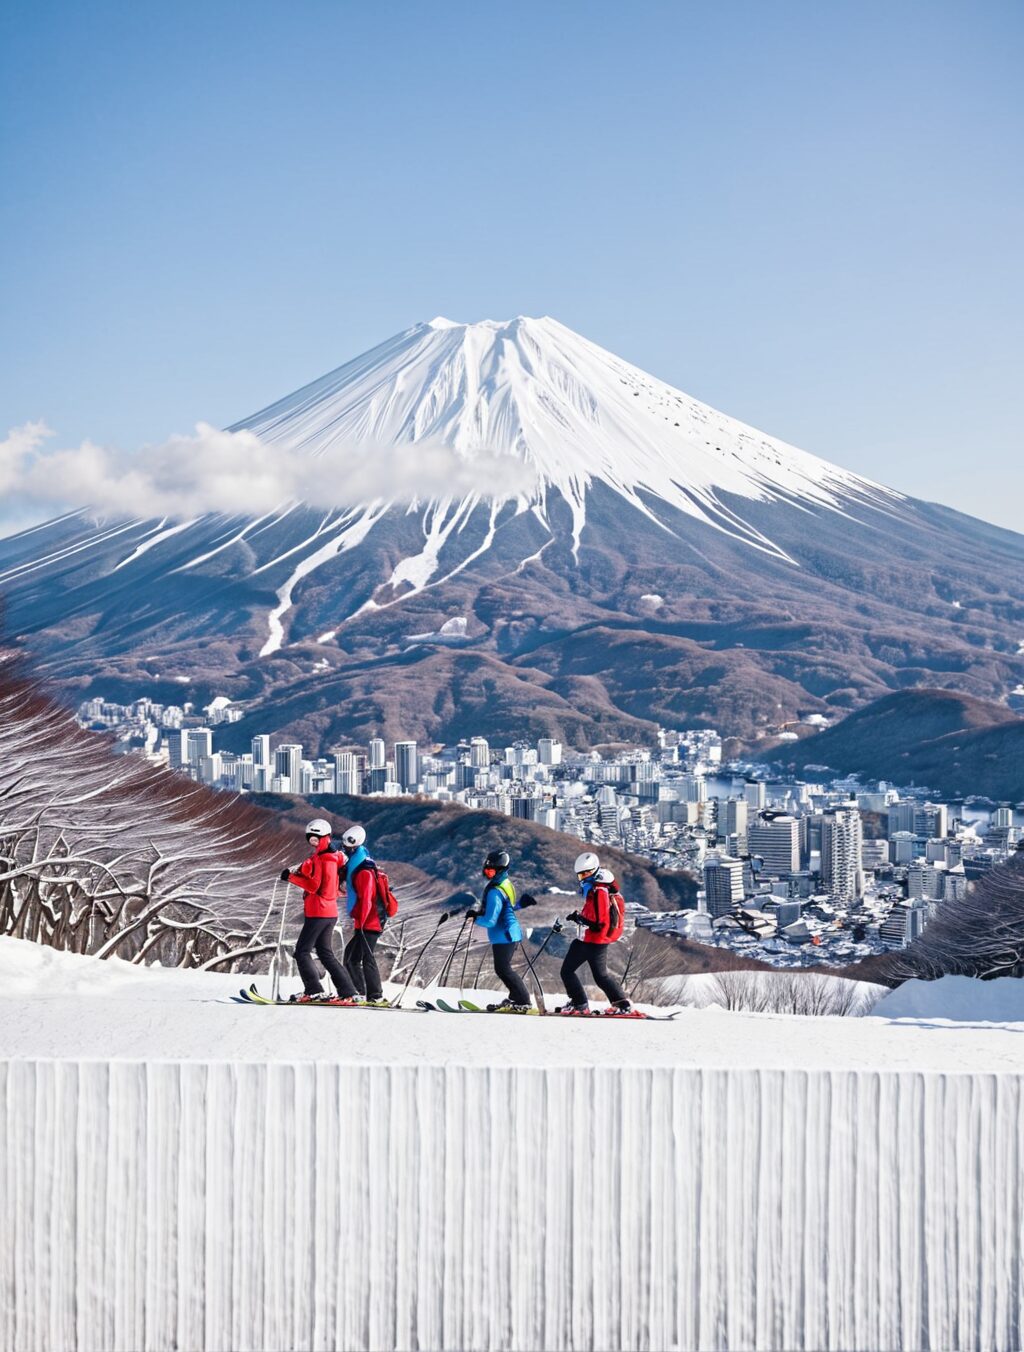 when is peak ski season in japan